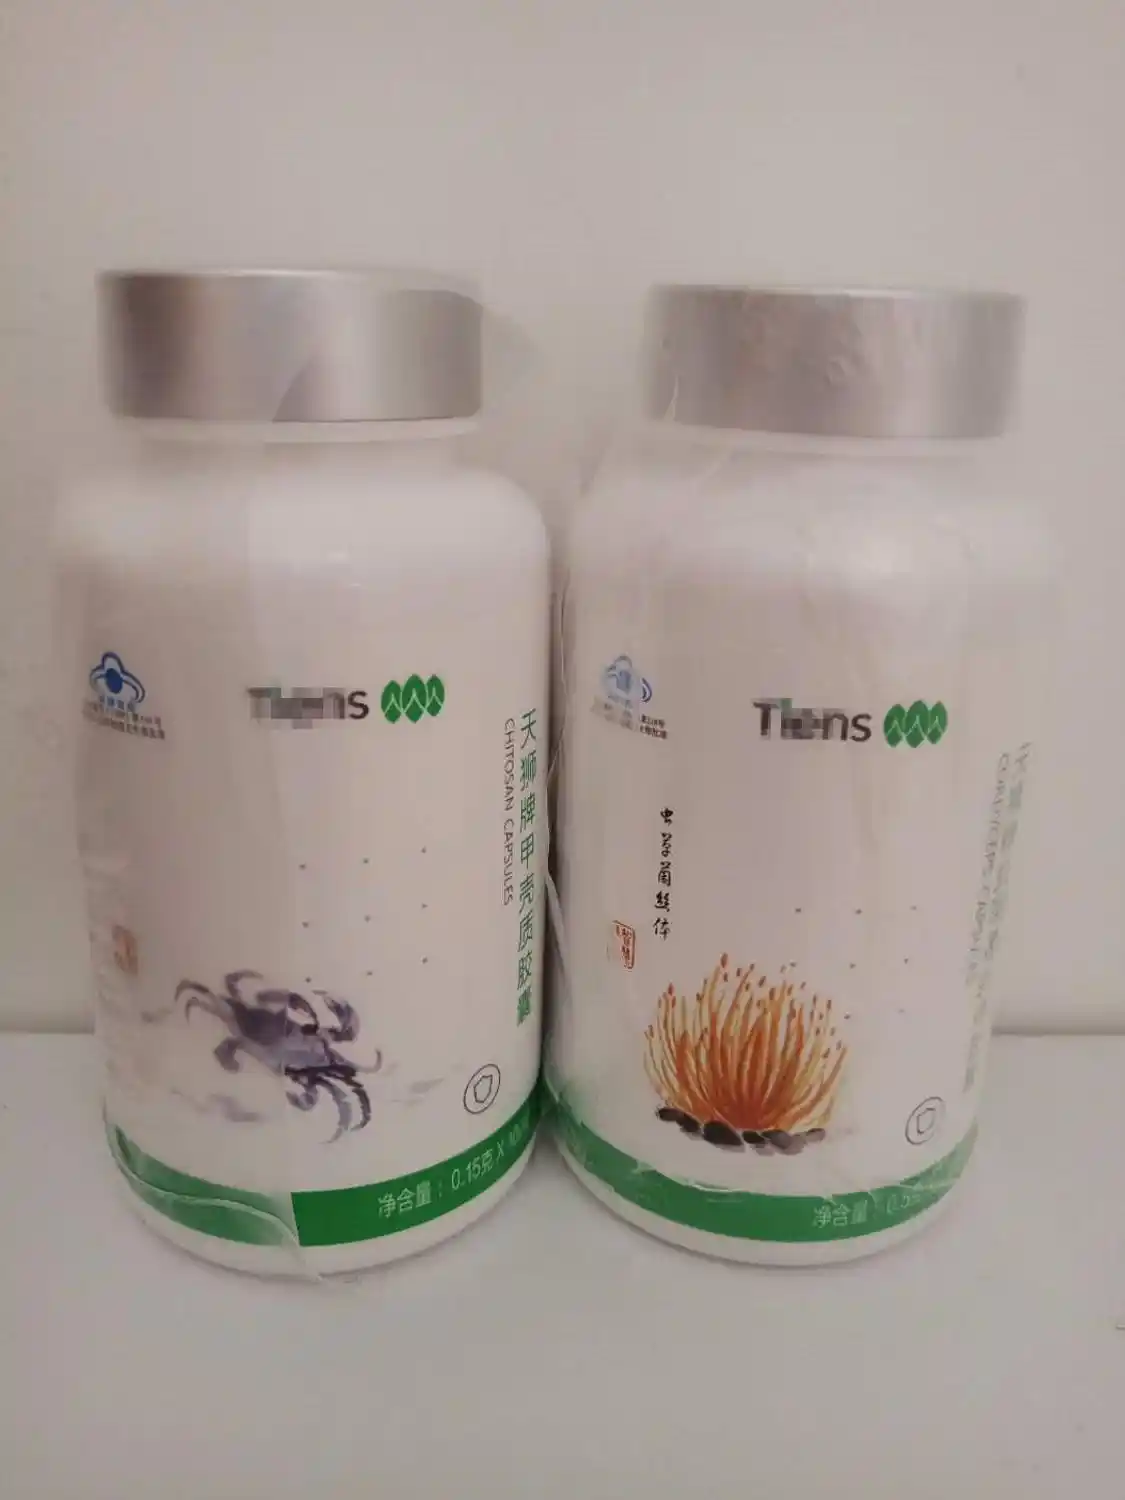 A prosztatagyulladás kezelése Tianshi termékekkel, Tianshi prosztata termékek